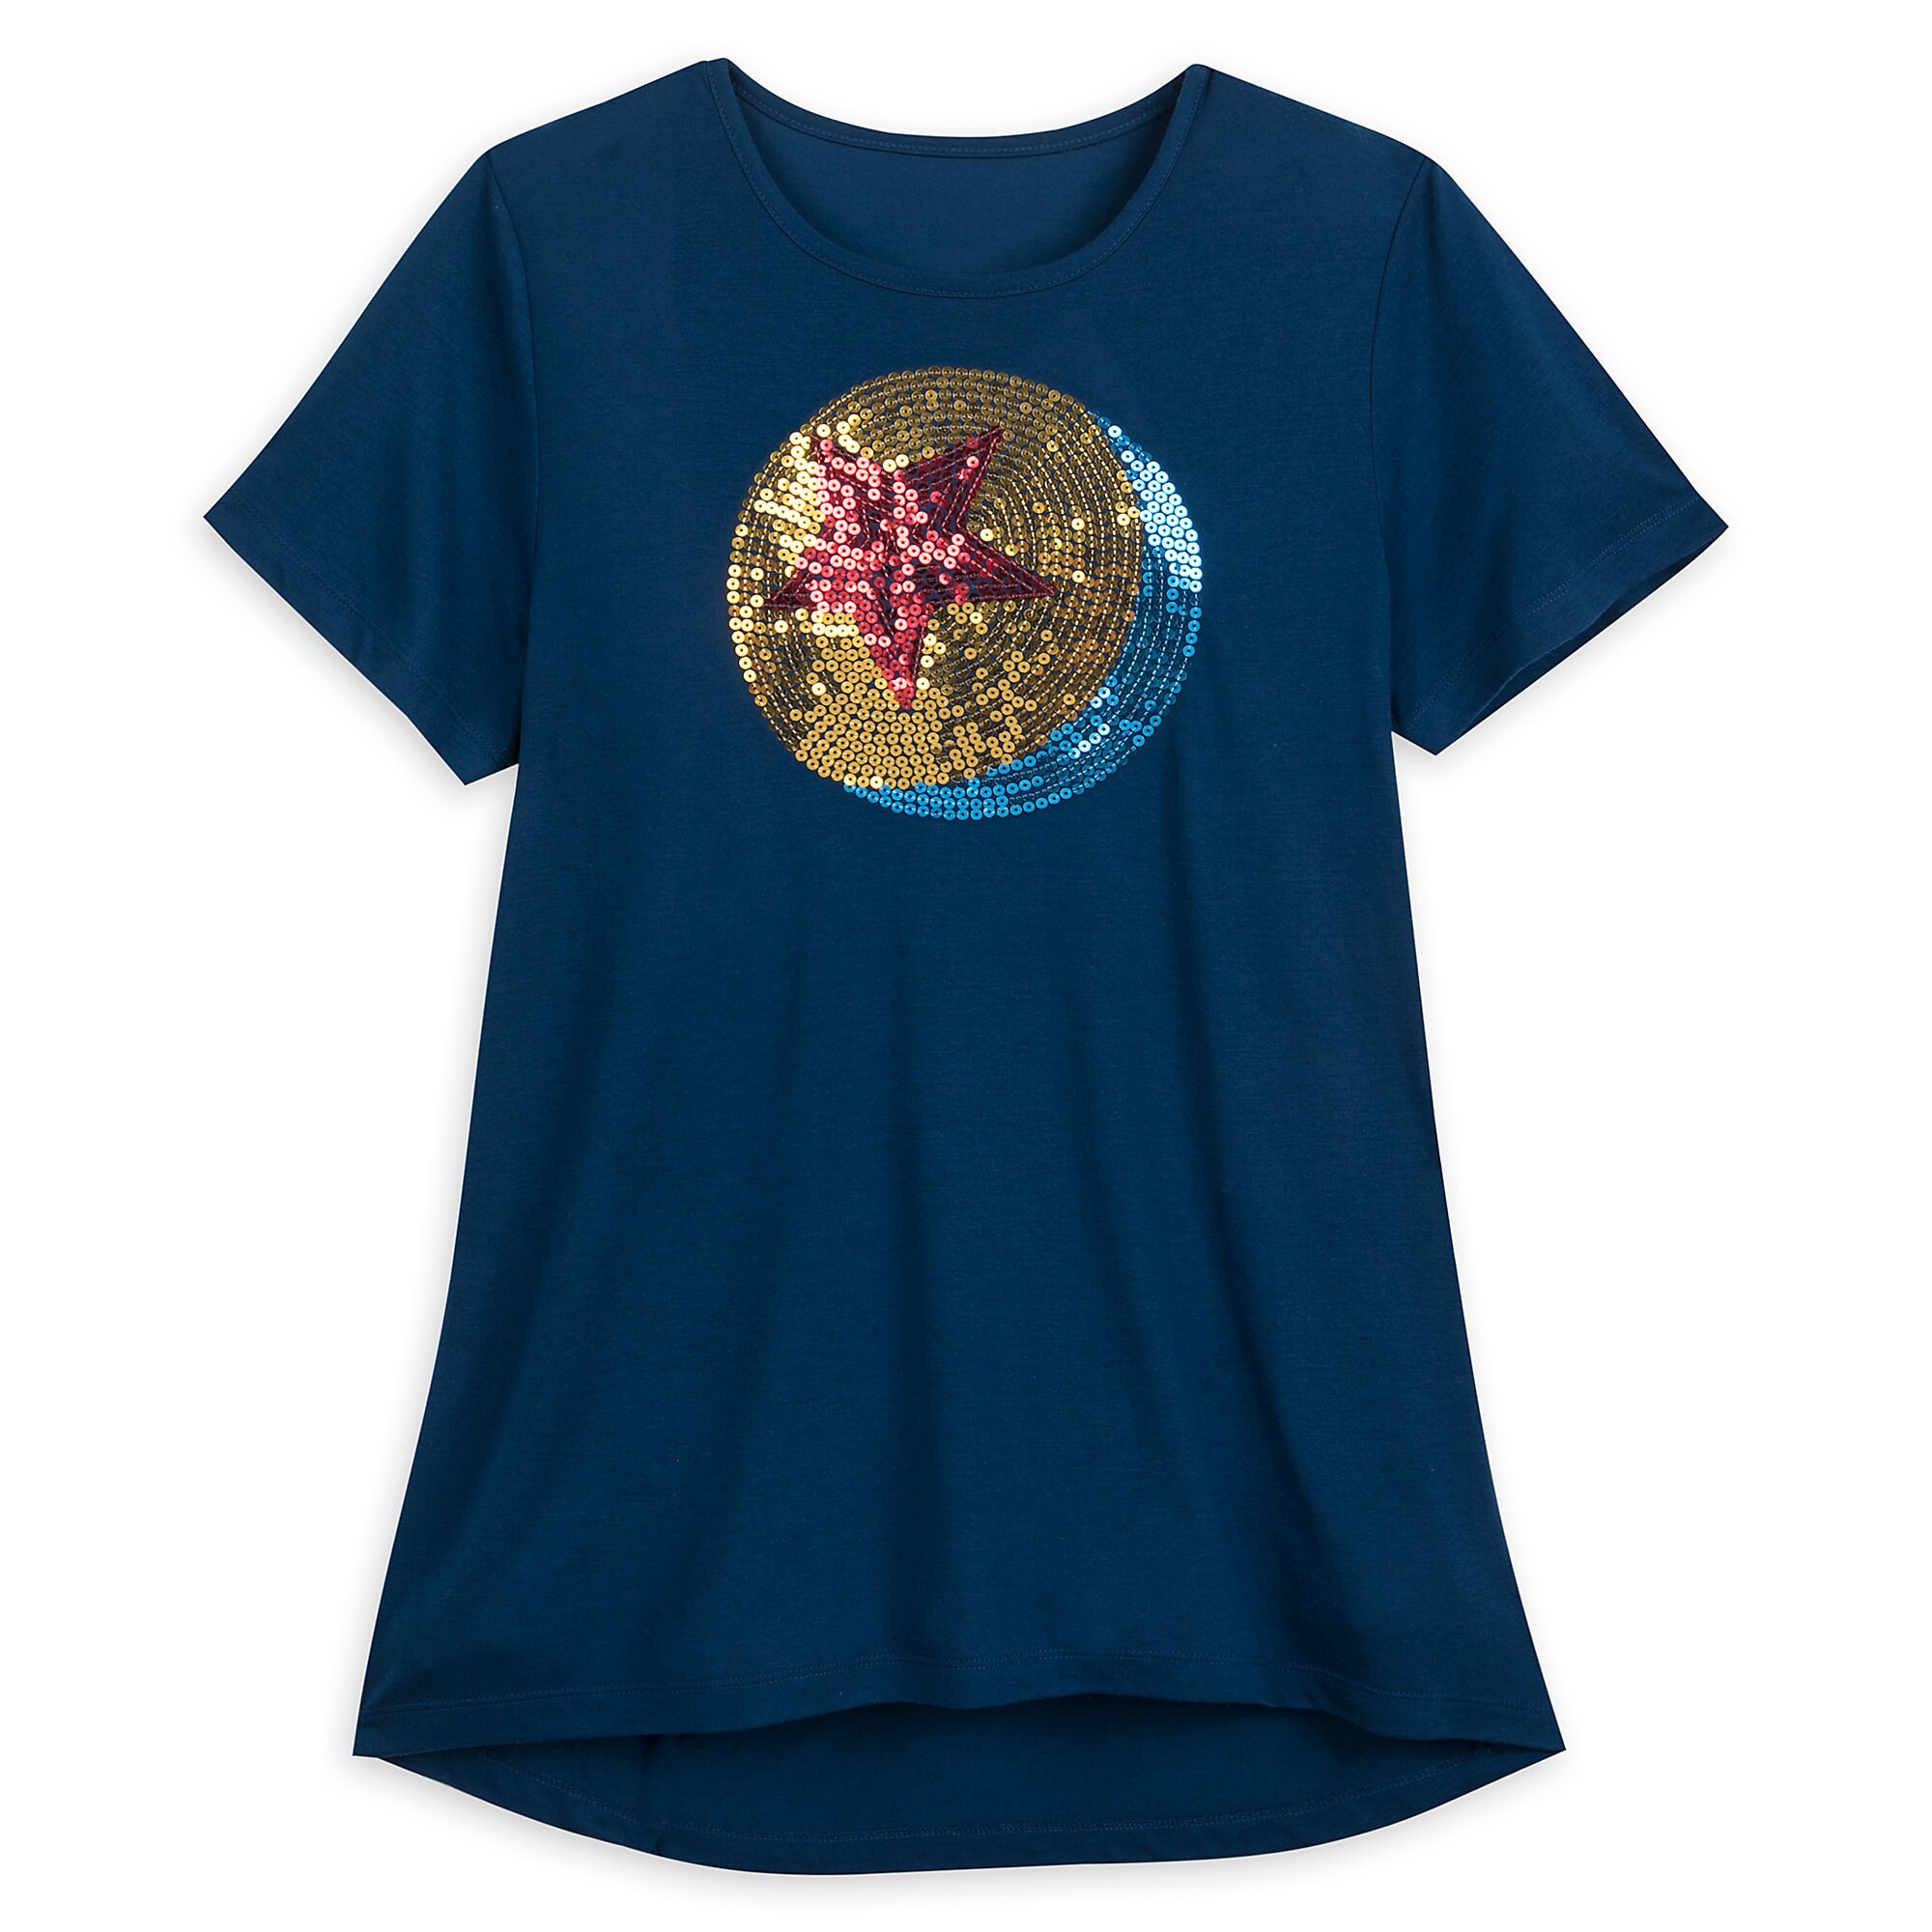 Luxo Ball Sequin T-Shirt for Women - PIXAR